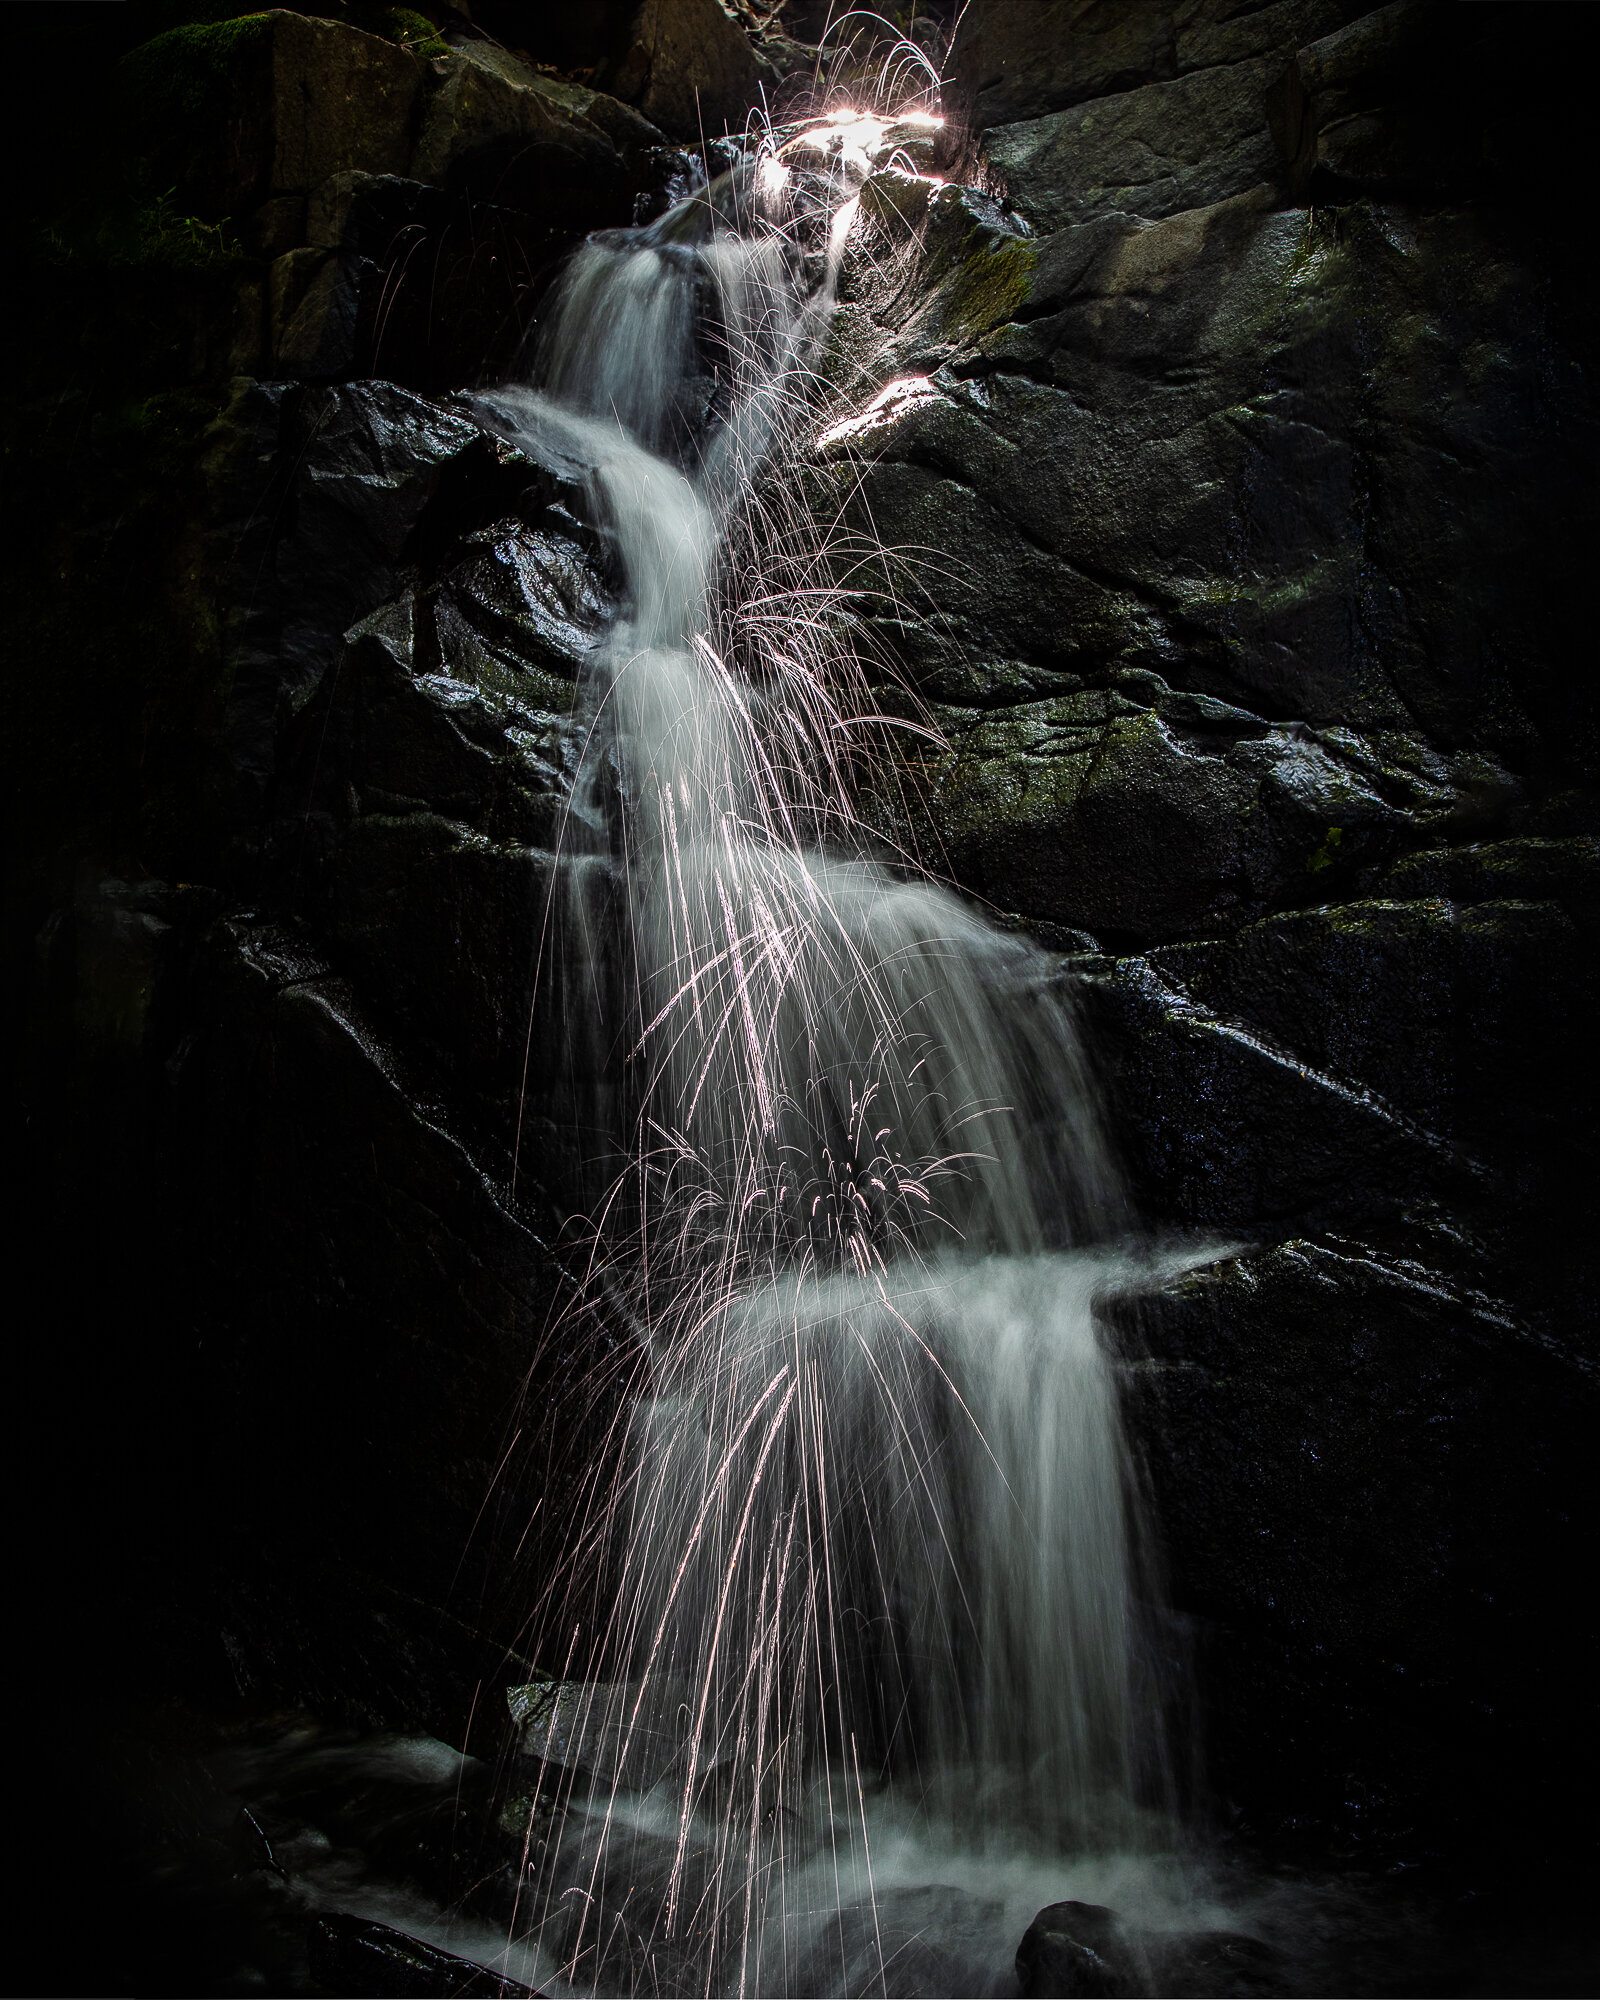   Thomas Miller    Waterfall   